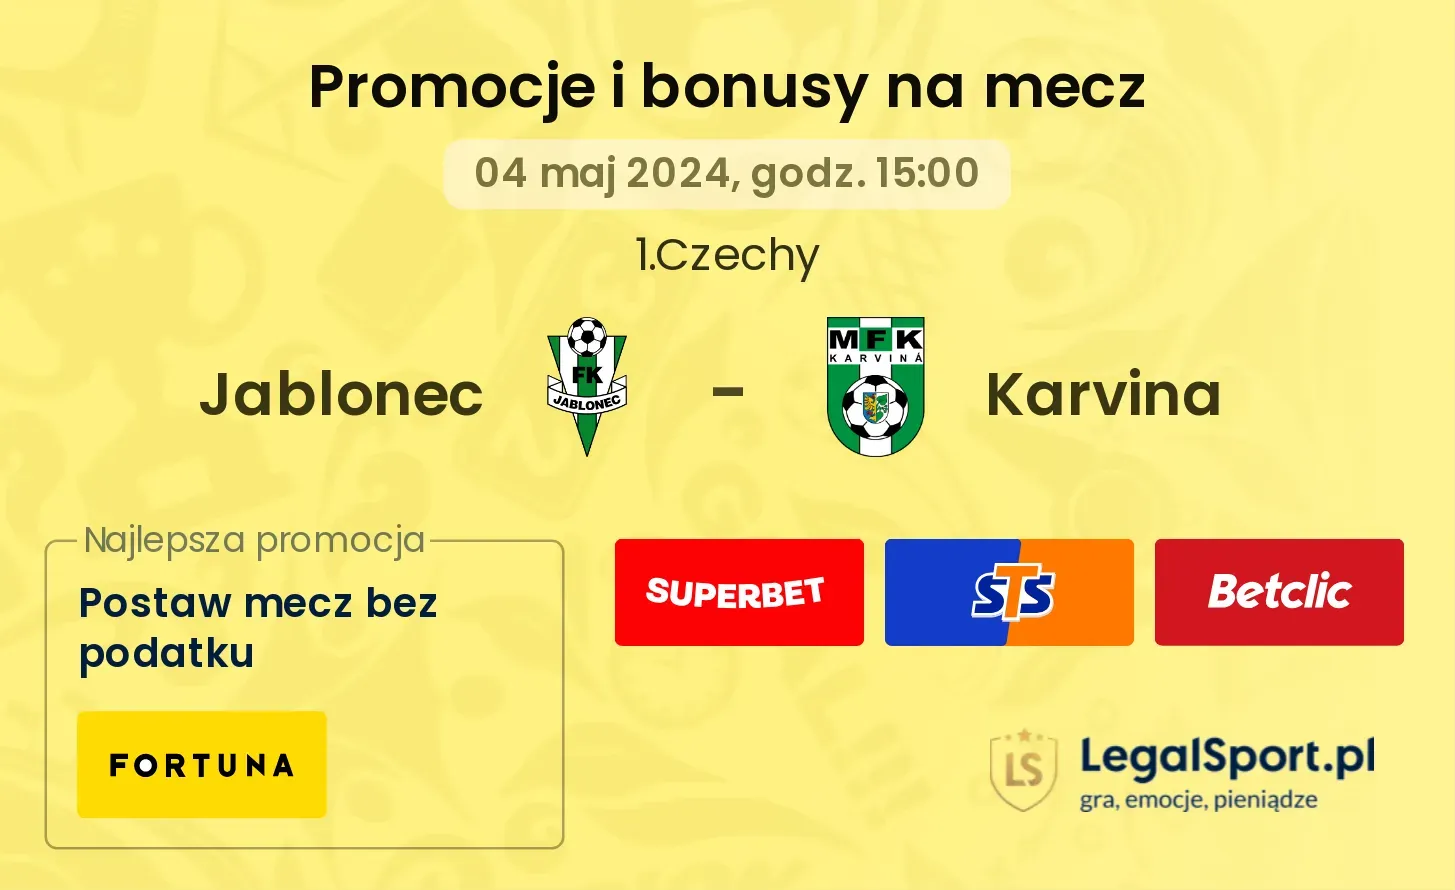 Jablonec - Karvina promocje bonusy na mecz